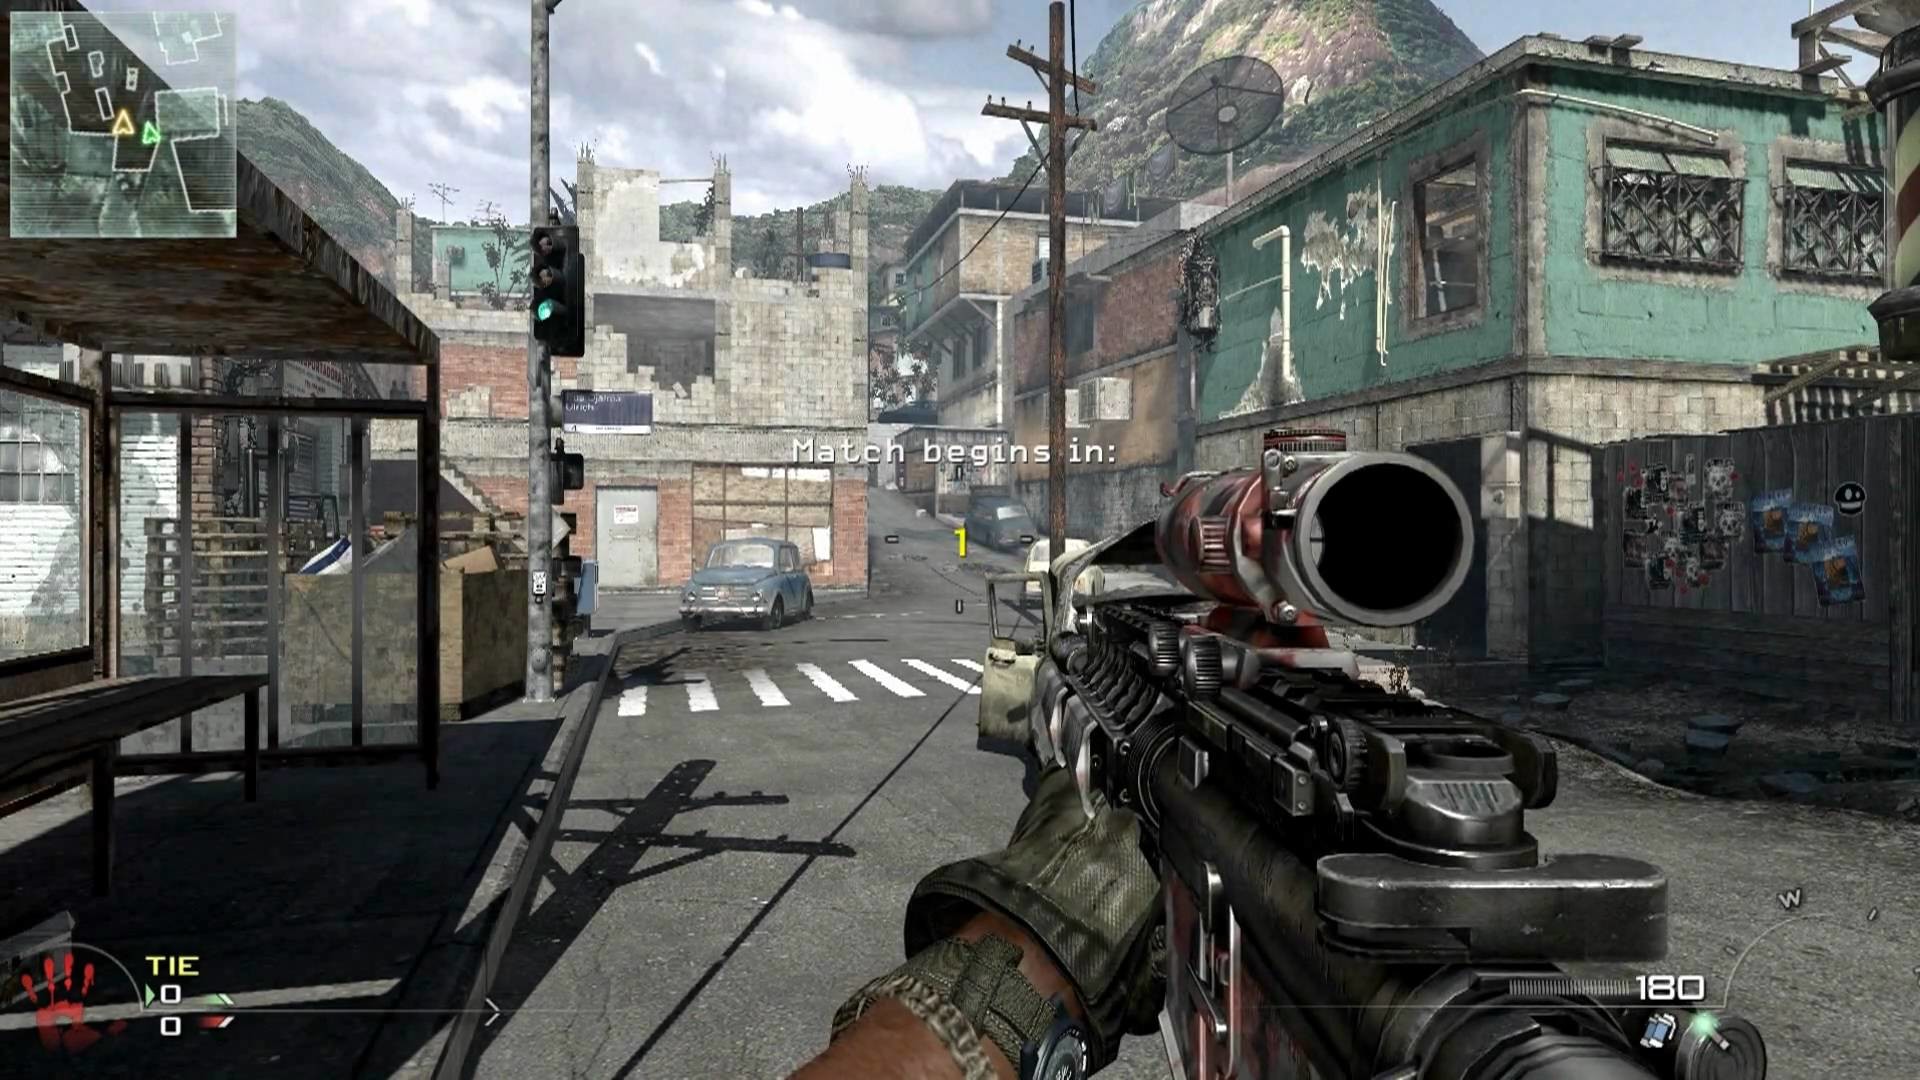 1920x1080 PC Call of Duty Modern Warfare 2 Shotgun Jump in Favela - 1080p - YouTube